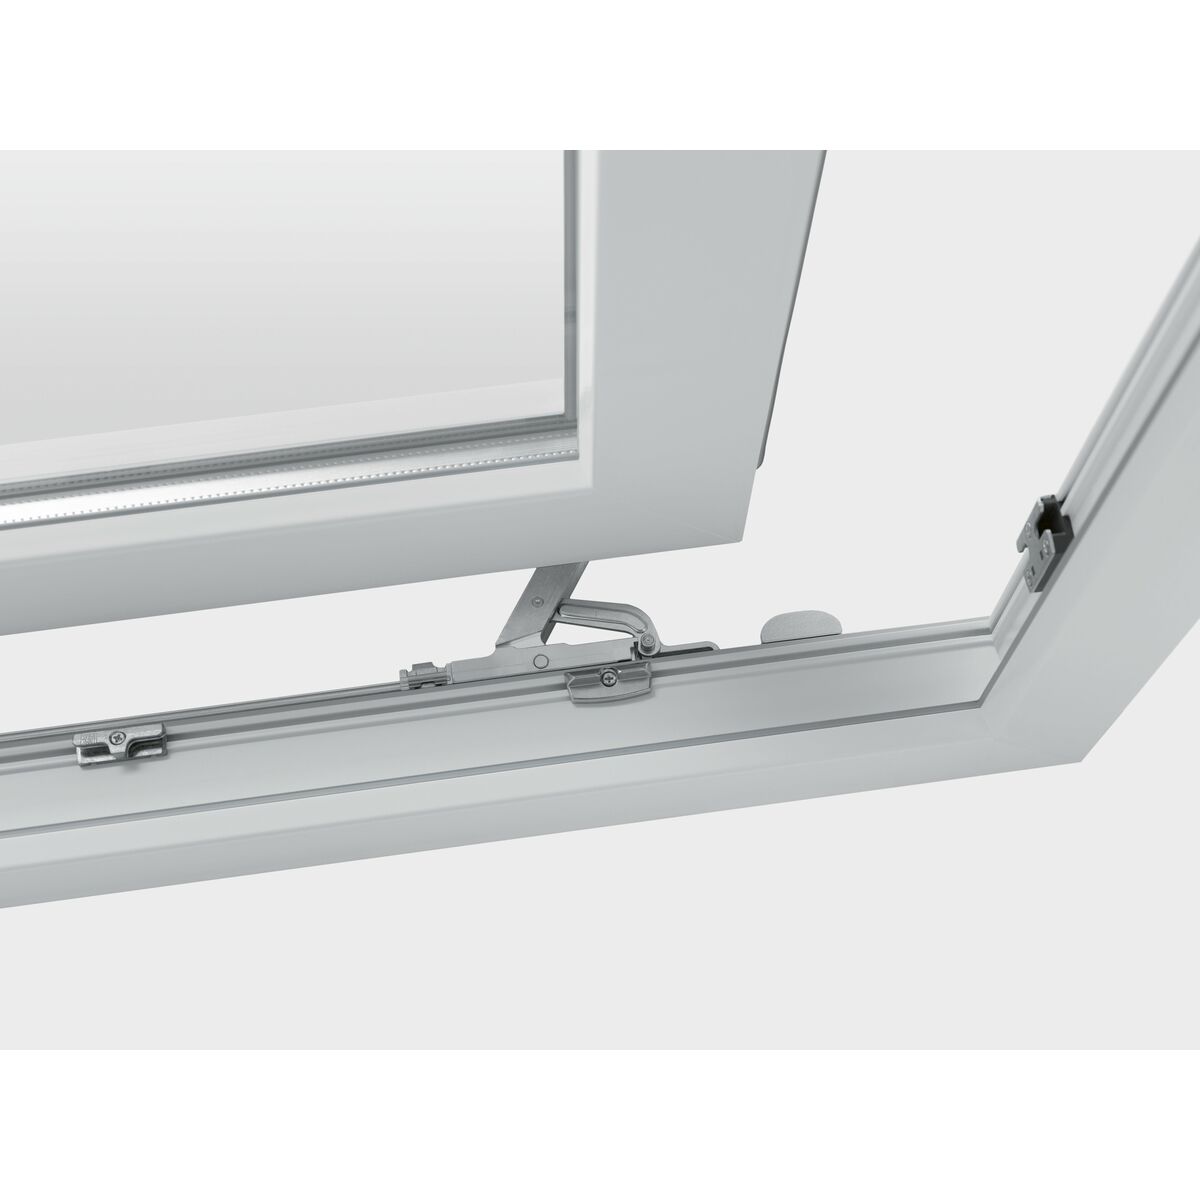 Okno PCV 3-szybowe tarasowe PSK białe 2700x2300 mm przesuwne w prawo